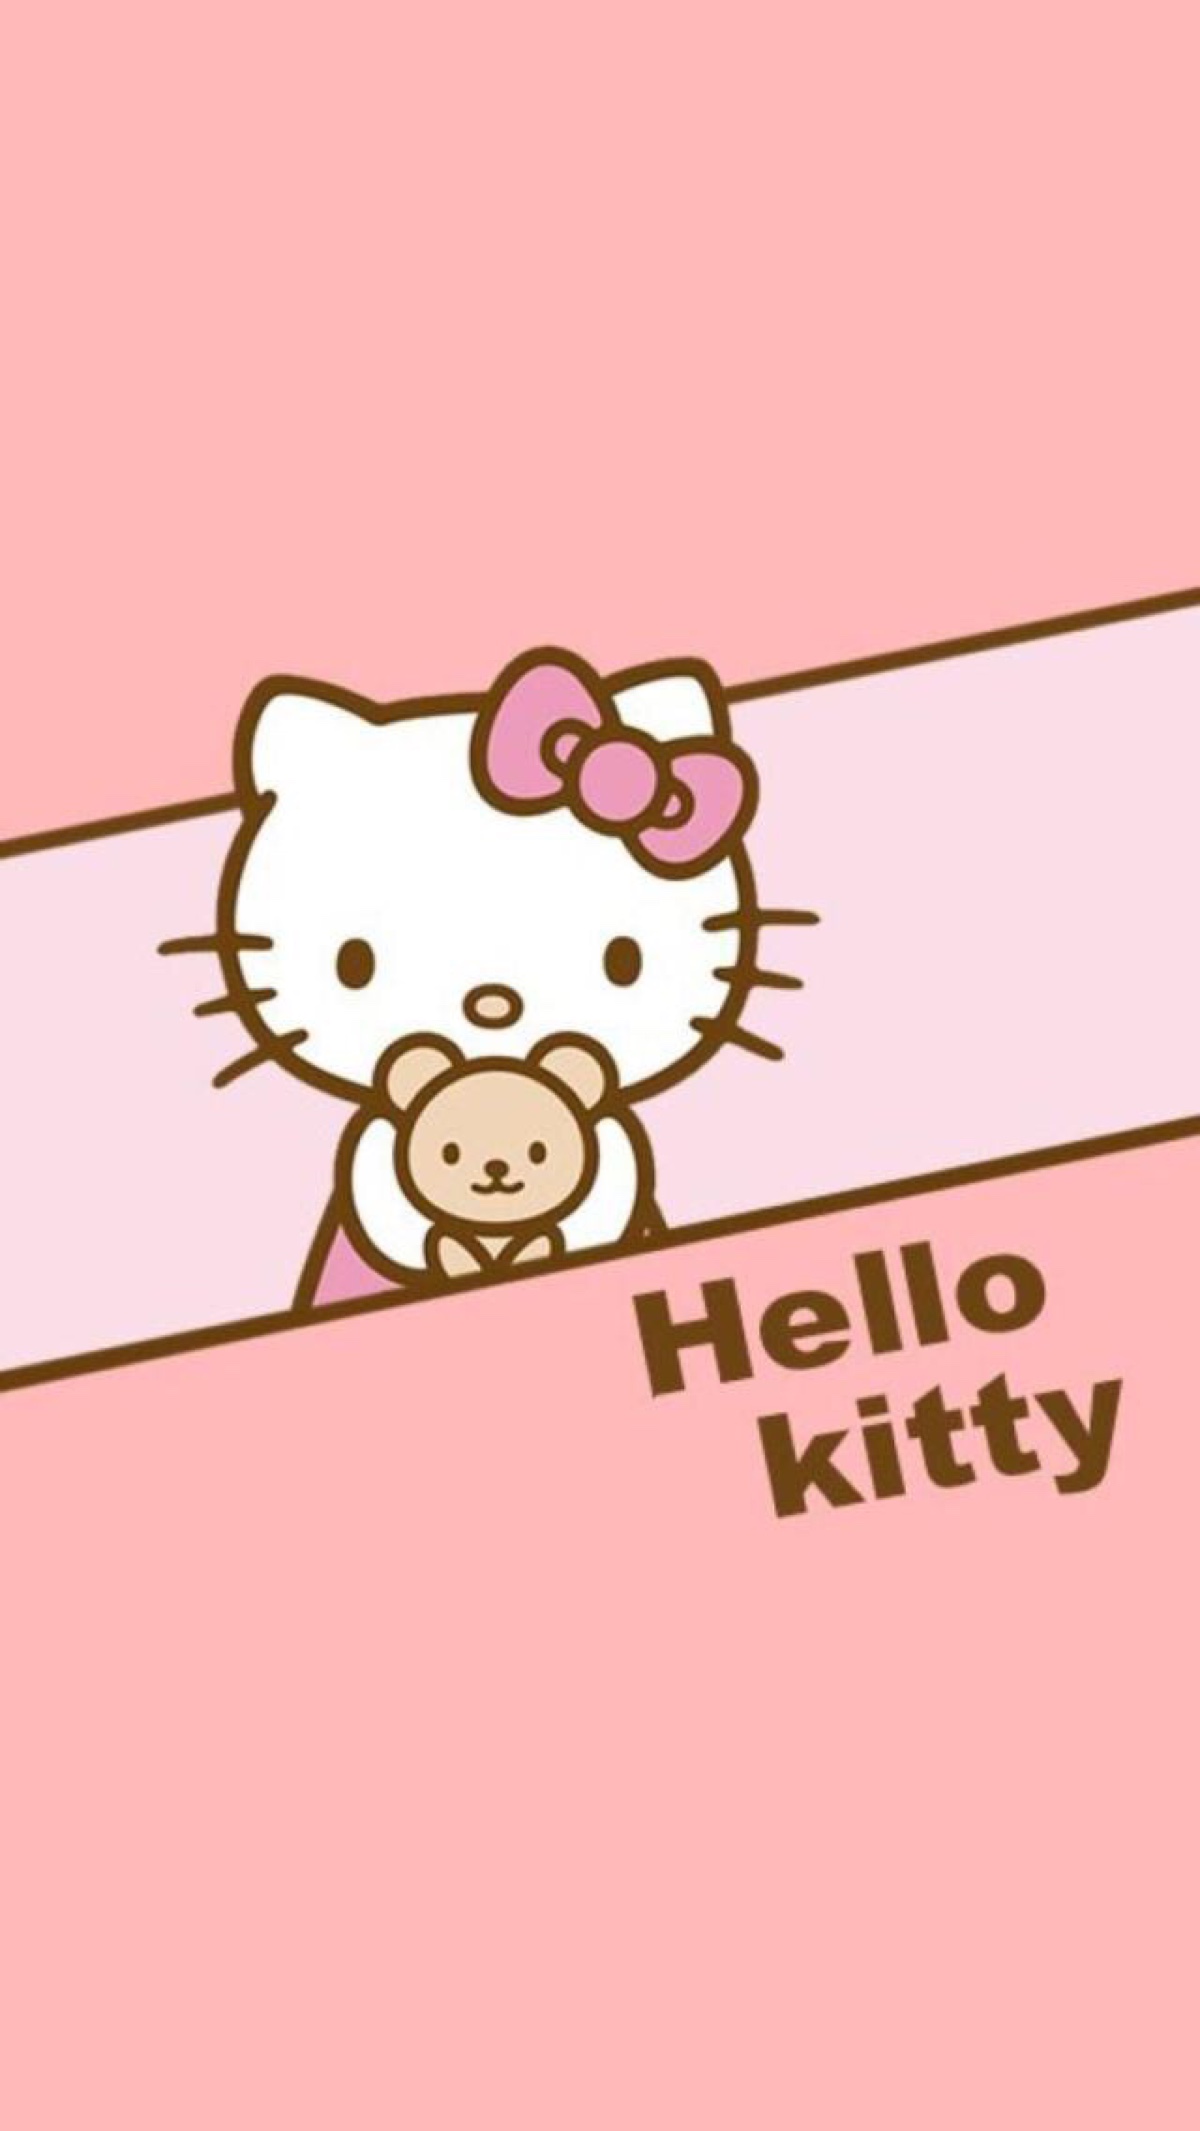 iPhone 壁纸 Hello Kitty 凯蒂 KT猫 - 高清图片，堆糖，美图壁纸兴趣社区